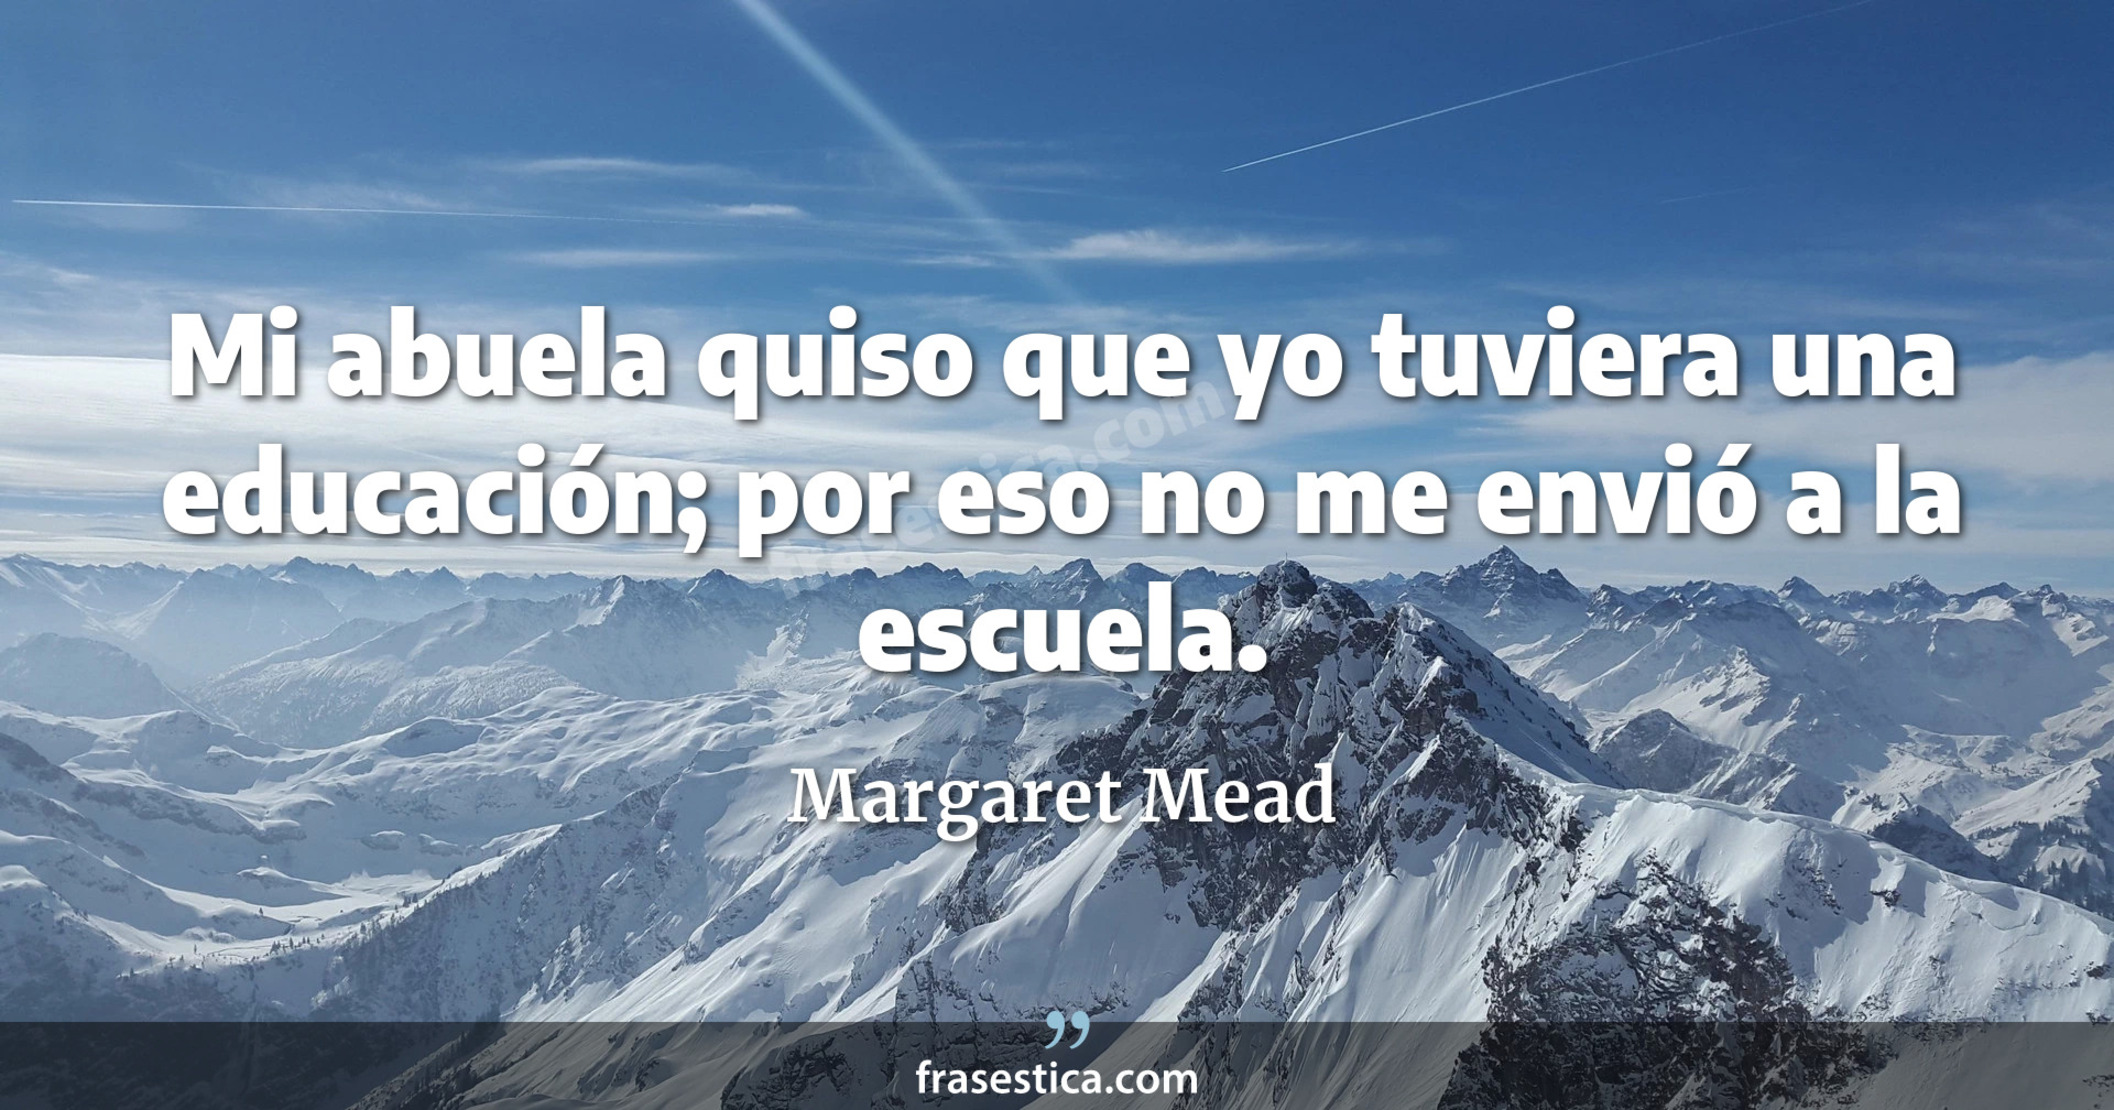 Mi abuela quiso que yo tuviera una educación; por eso no me envió a la escuela. - Margaret Mead